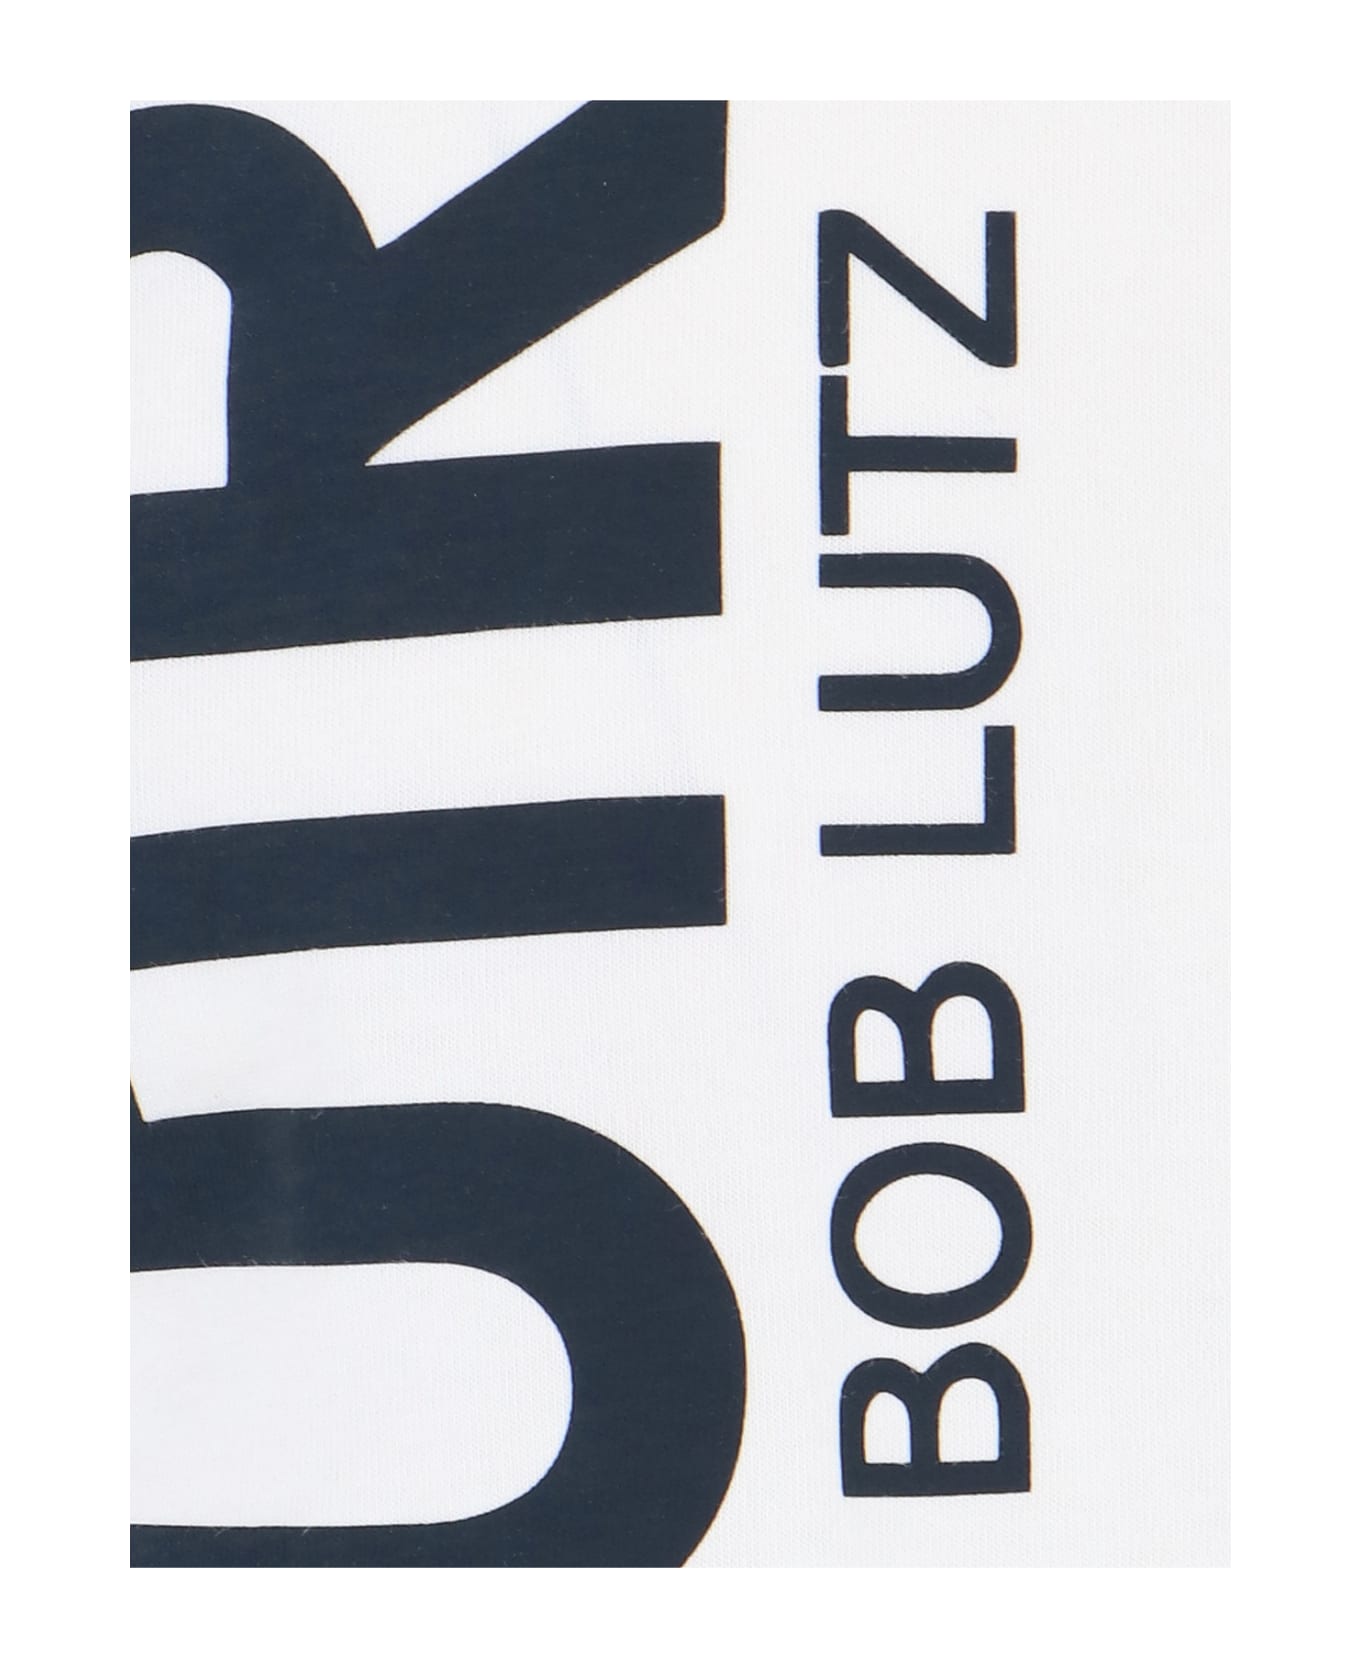 Autry Bob Lutz T-shirt - White シャツ